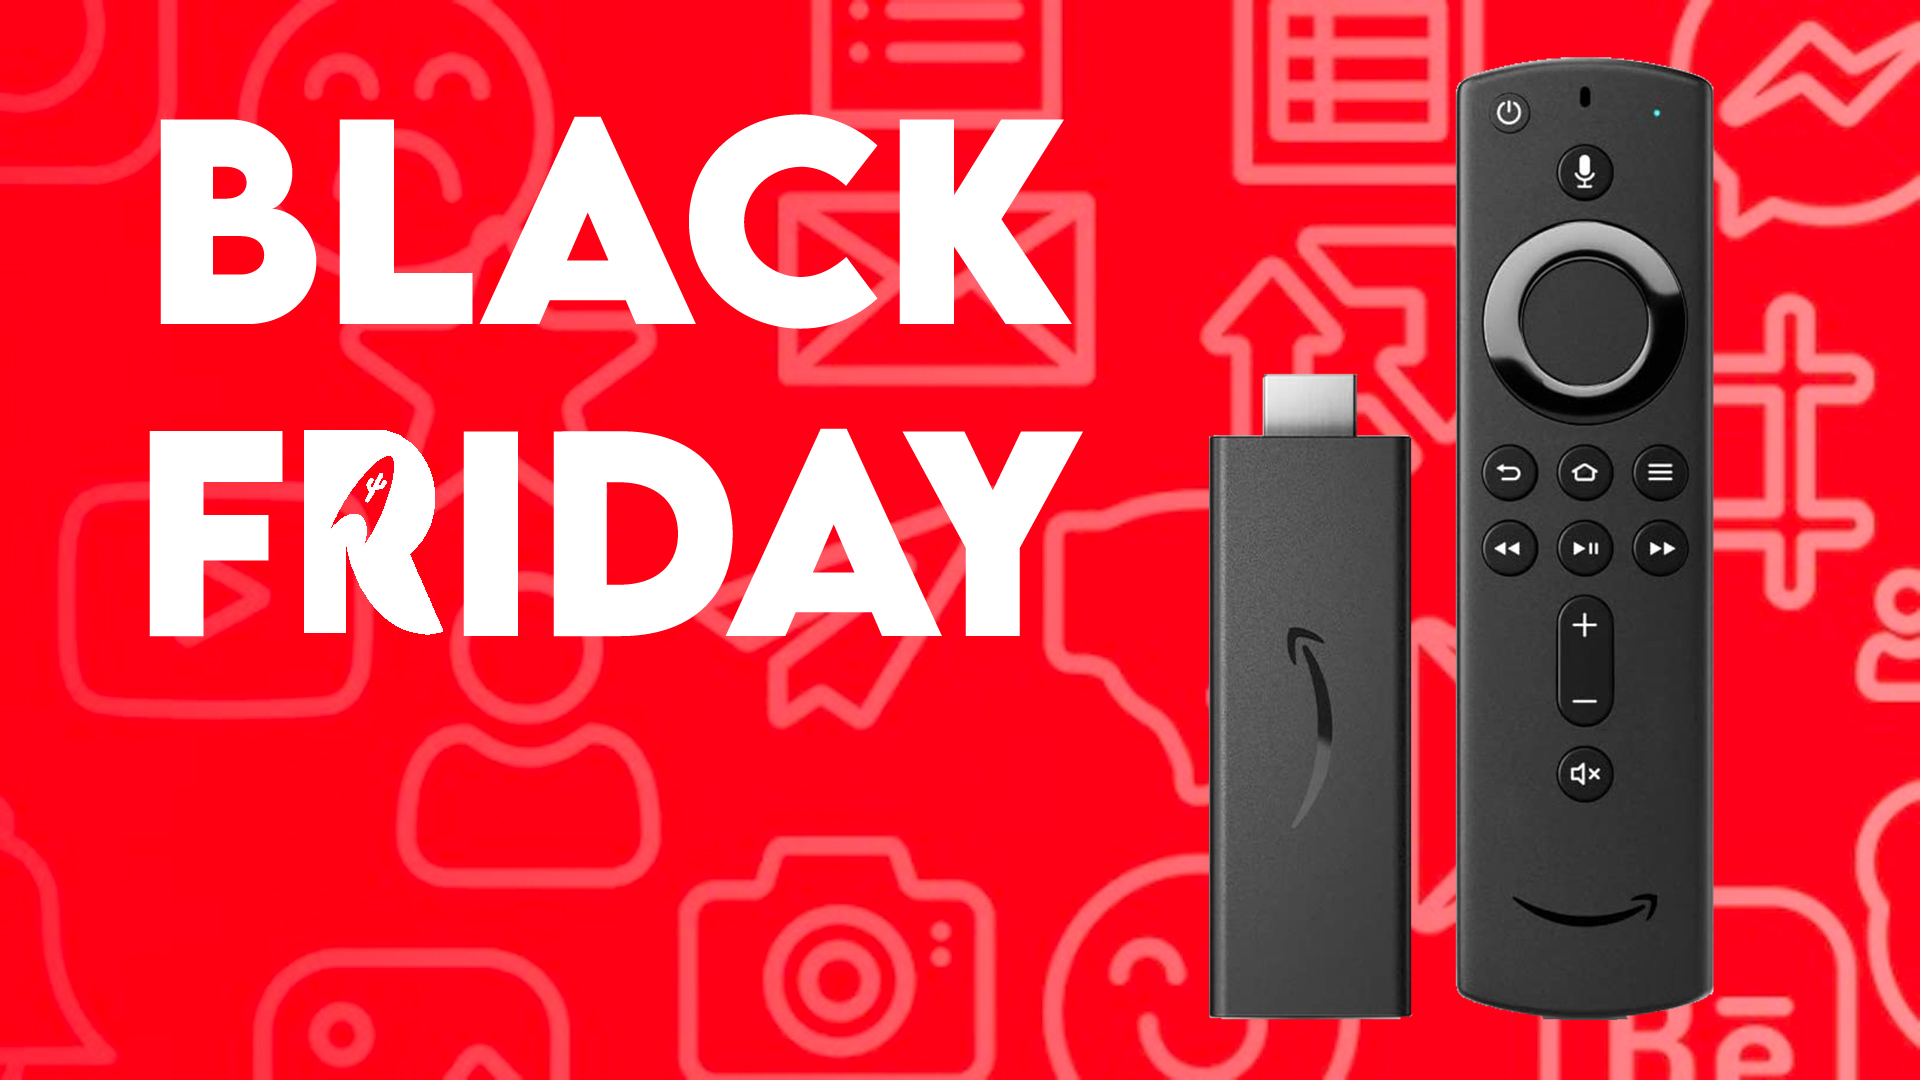 Le Fire TV Stick Lite d’Amazon à 20€ pour le Black Friday 2020 !